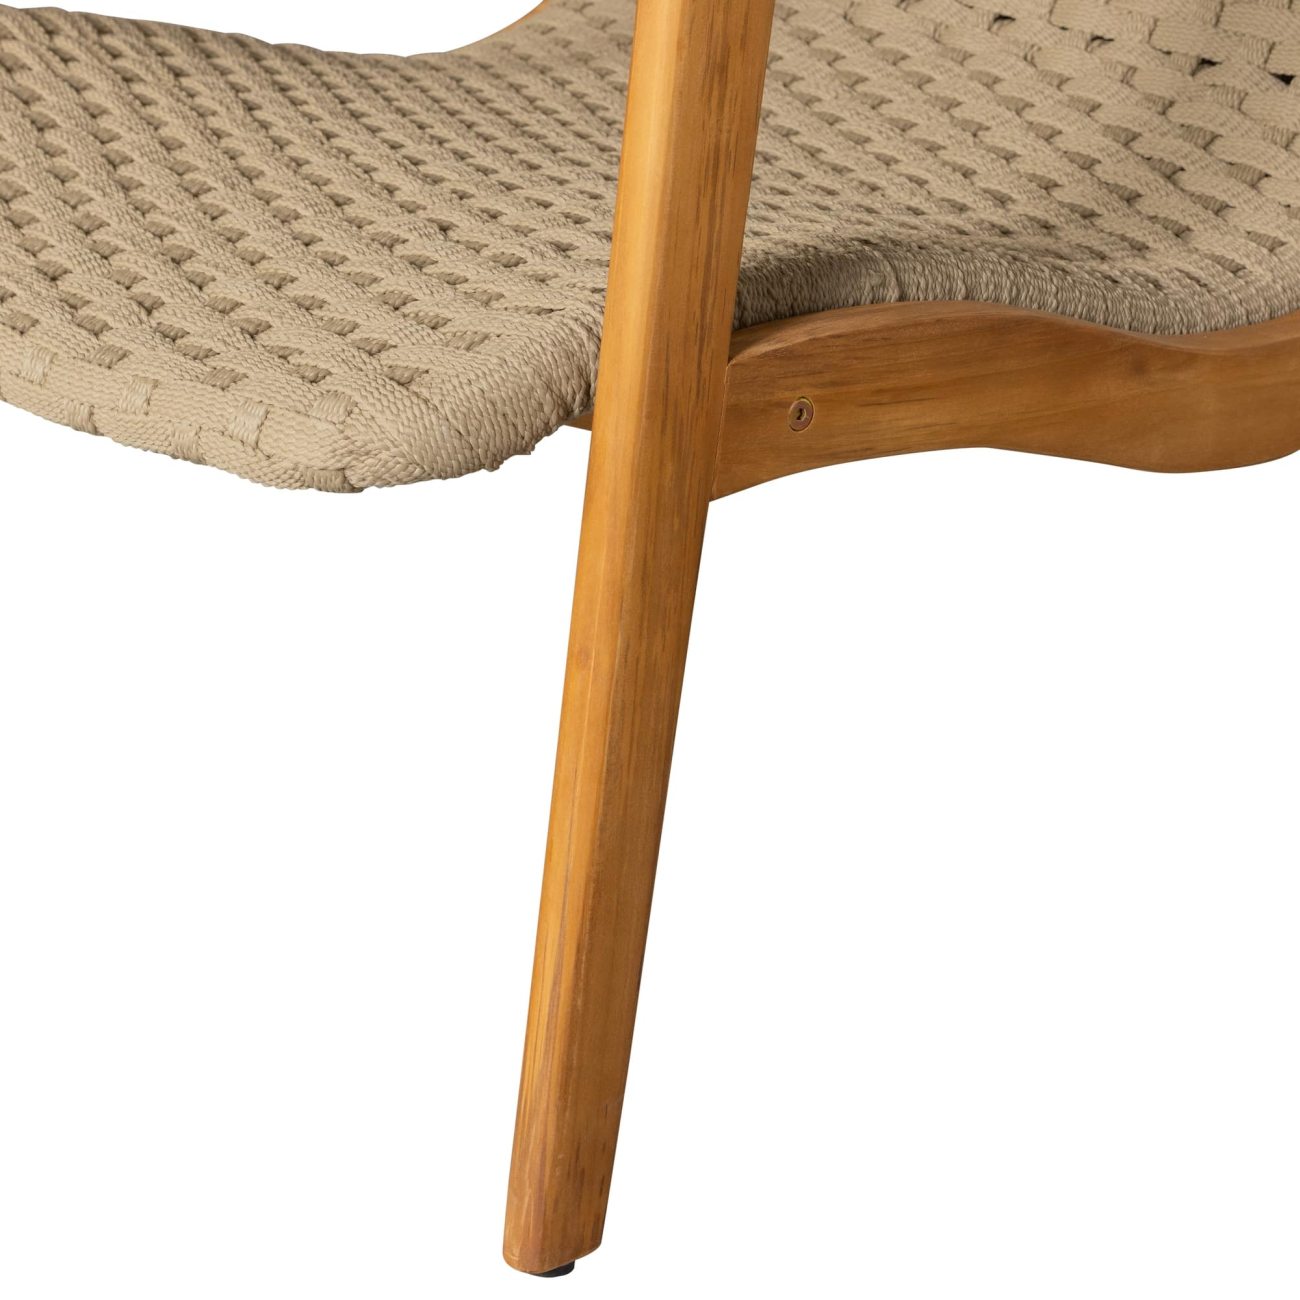 Der Gartensessel Stony überzeugt mit seinem modernen Design. Gefertigt wurde er aus geflochtenem Seil, welches einen Sand Farbton besitzt. Das Gestell ist aus Teakholz und hat eine natürliche Farbe. Der Sessel besitzt eine Sitzhöhe von 34 cm.